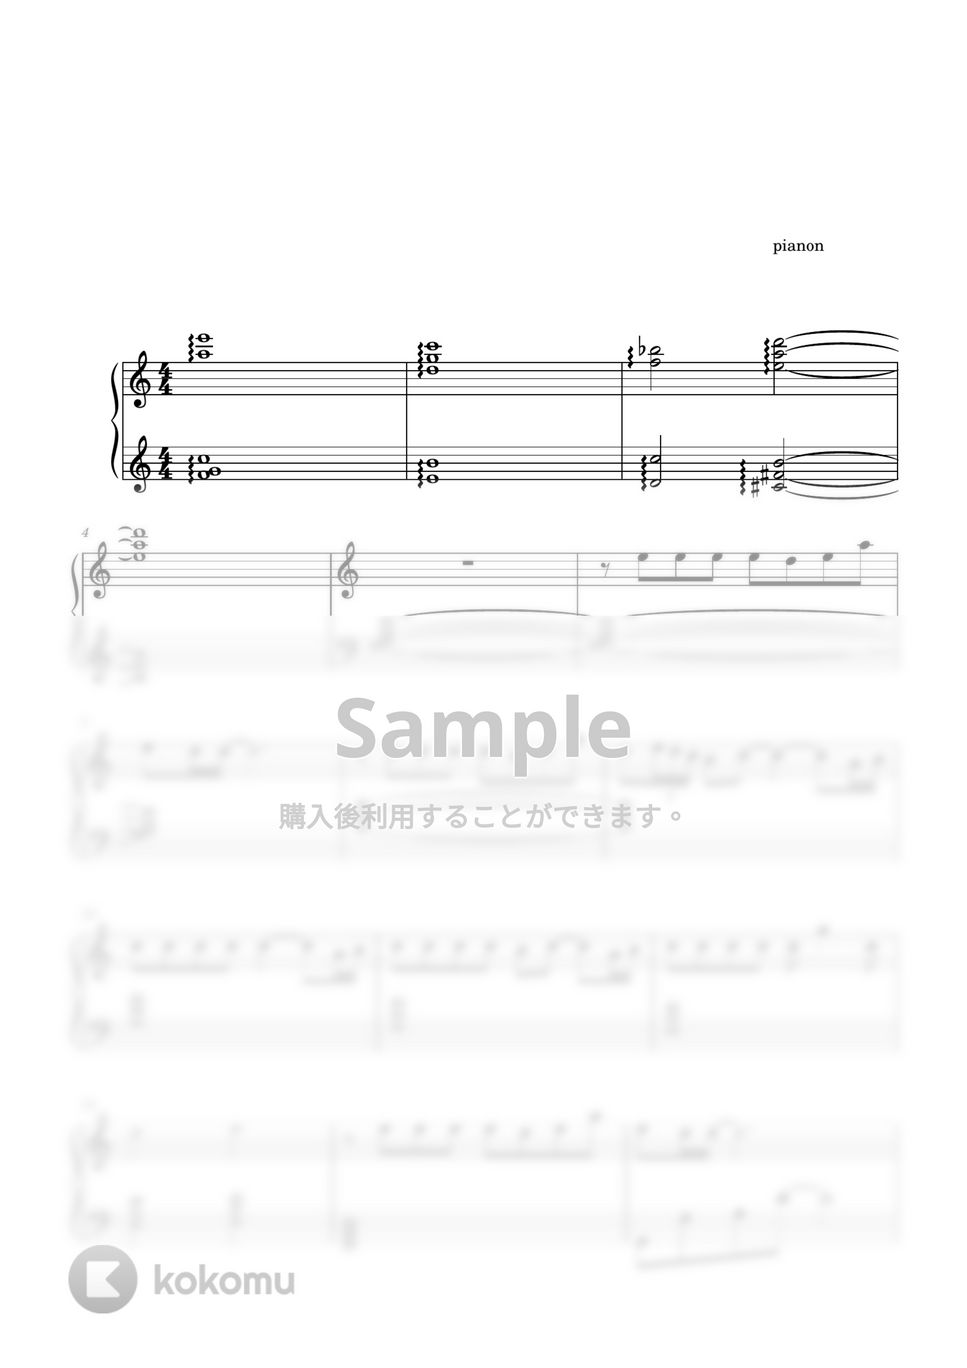 久石譲 - あの夏へ (ピアノ上級ソロ) by pianon